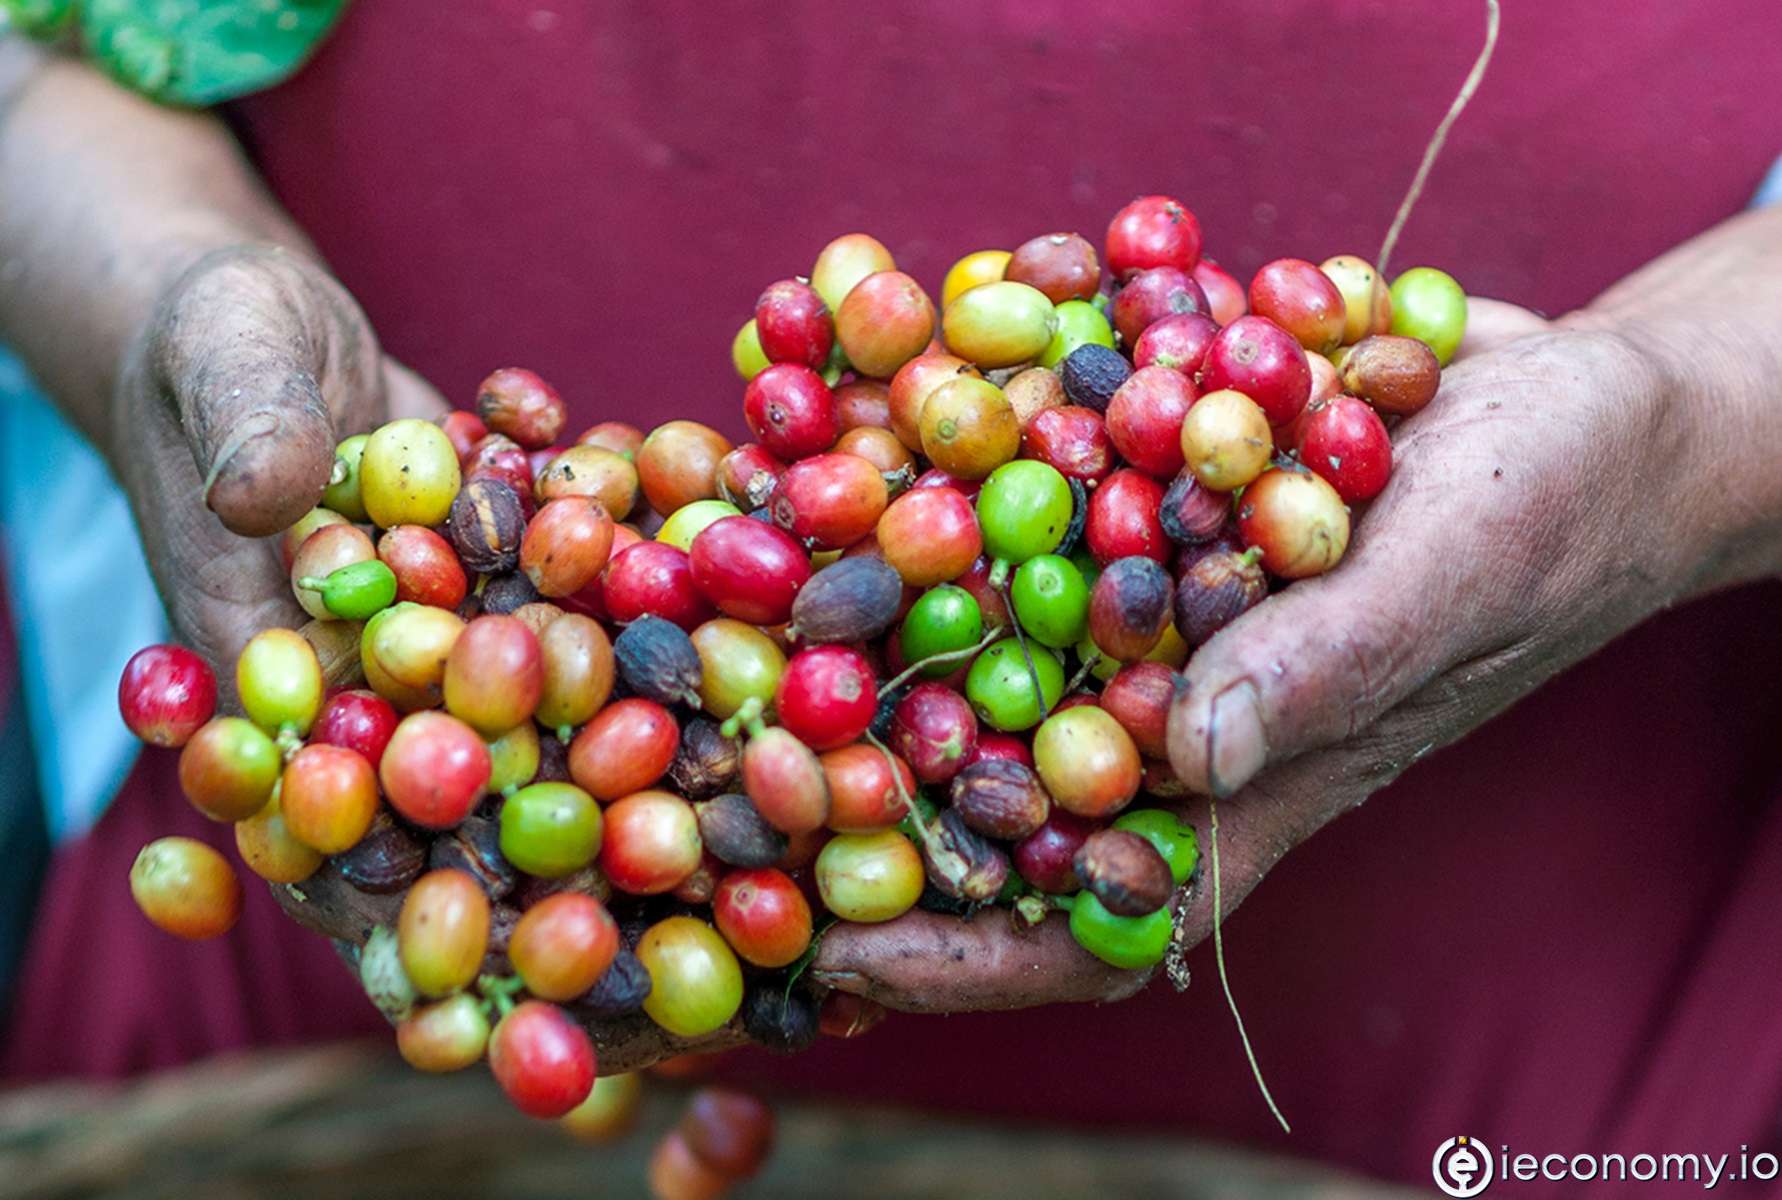 Küresel kahve tüketimi üretimi geçecek